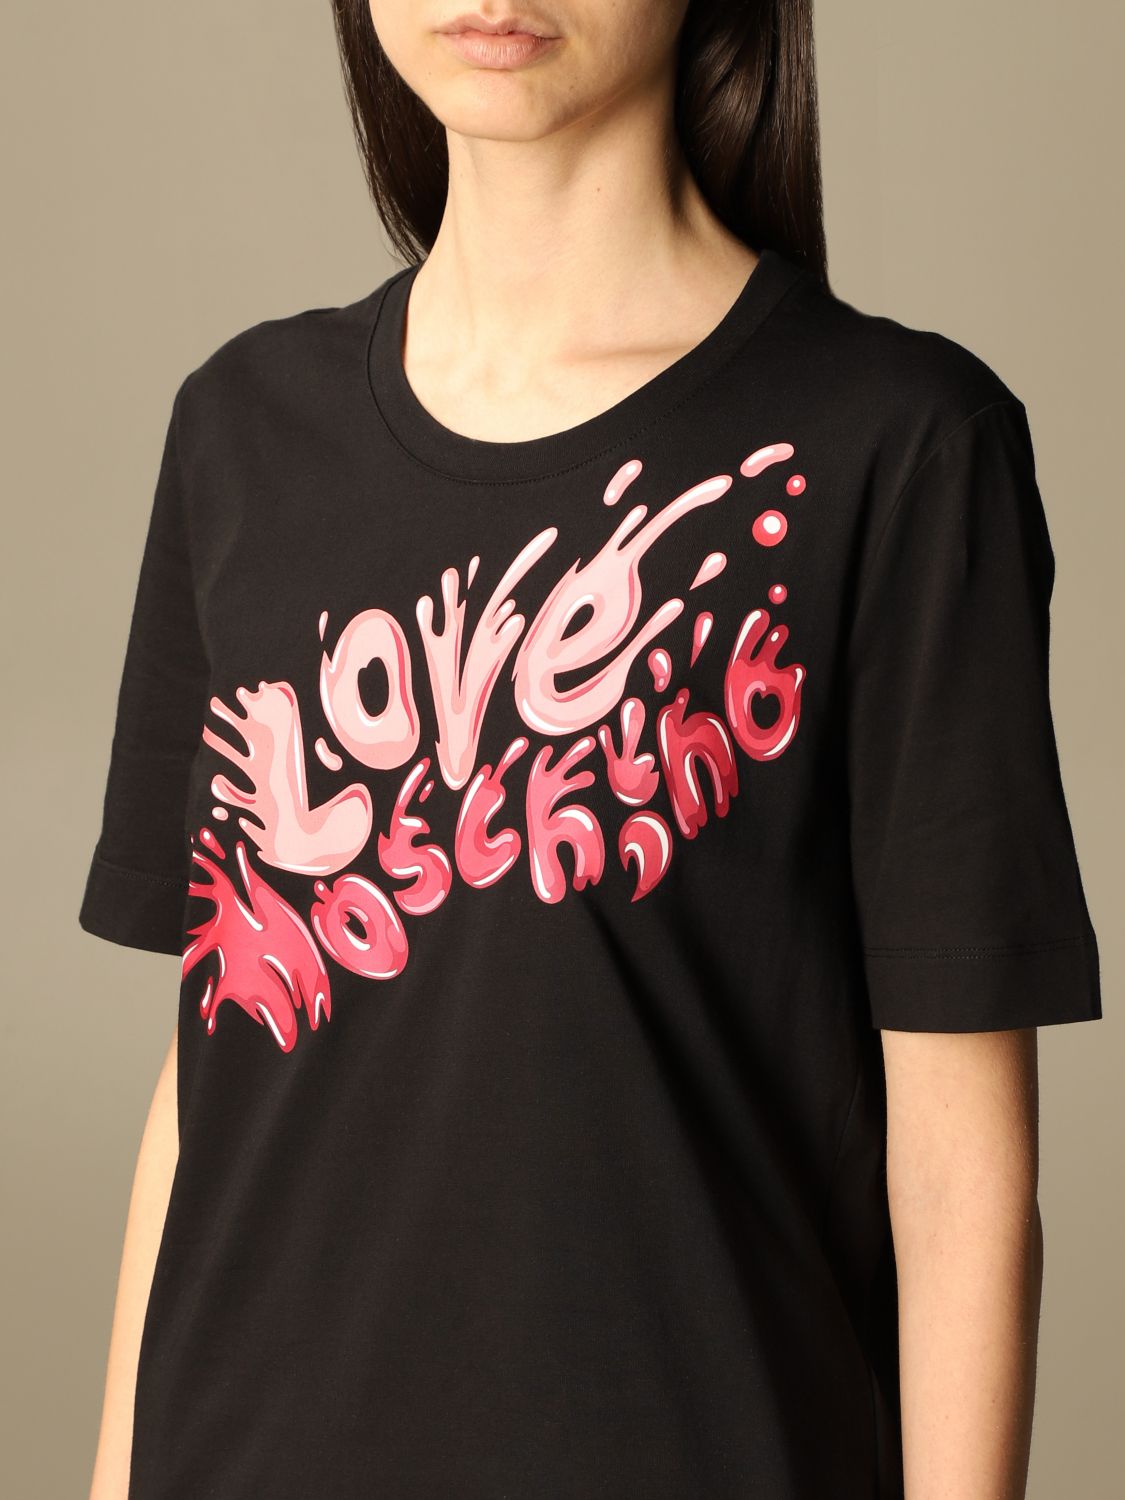 love moschino black shirt